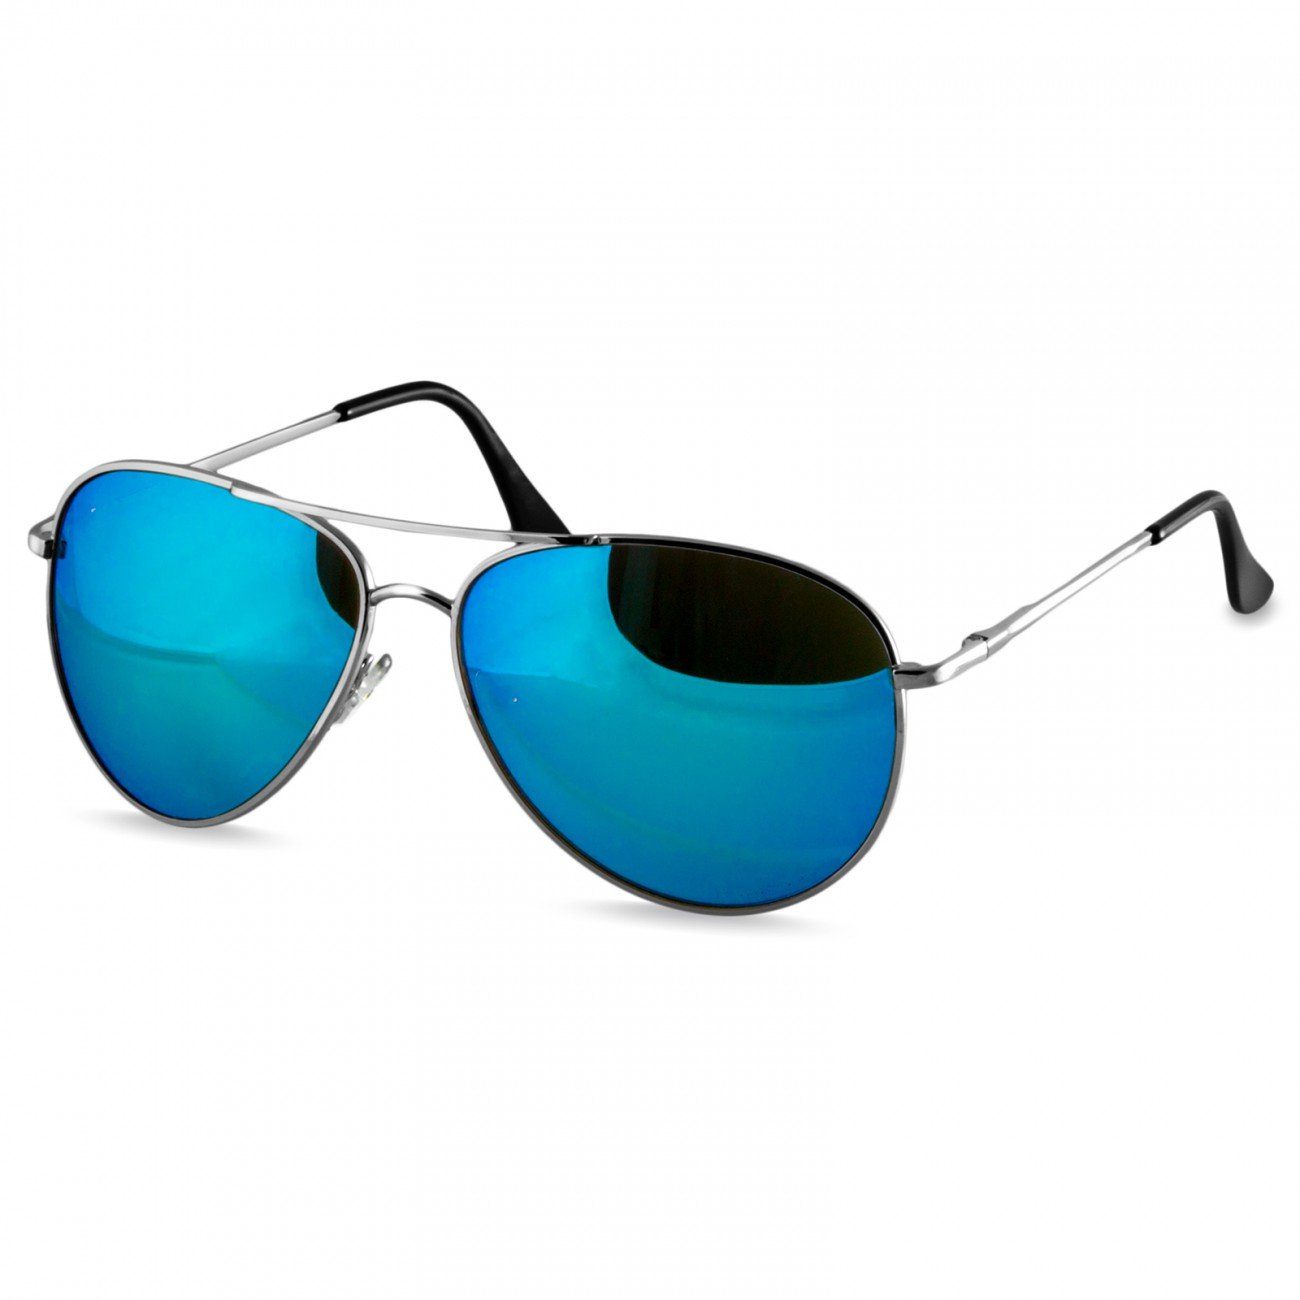 Pilotenbrille Sonnenbrille klassische Retro silber / hellblau Caspar SG013 verspiegelt Unisex